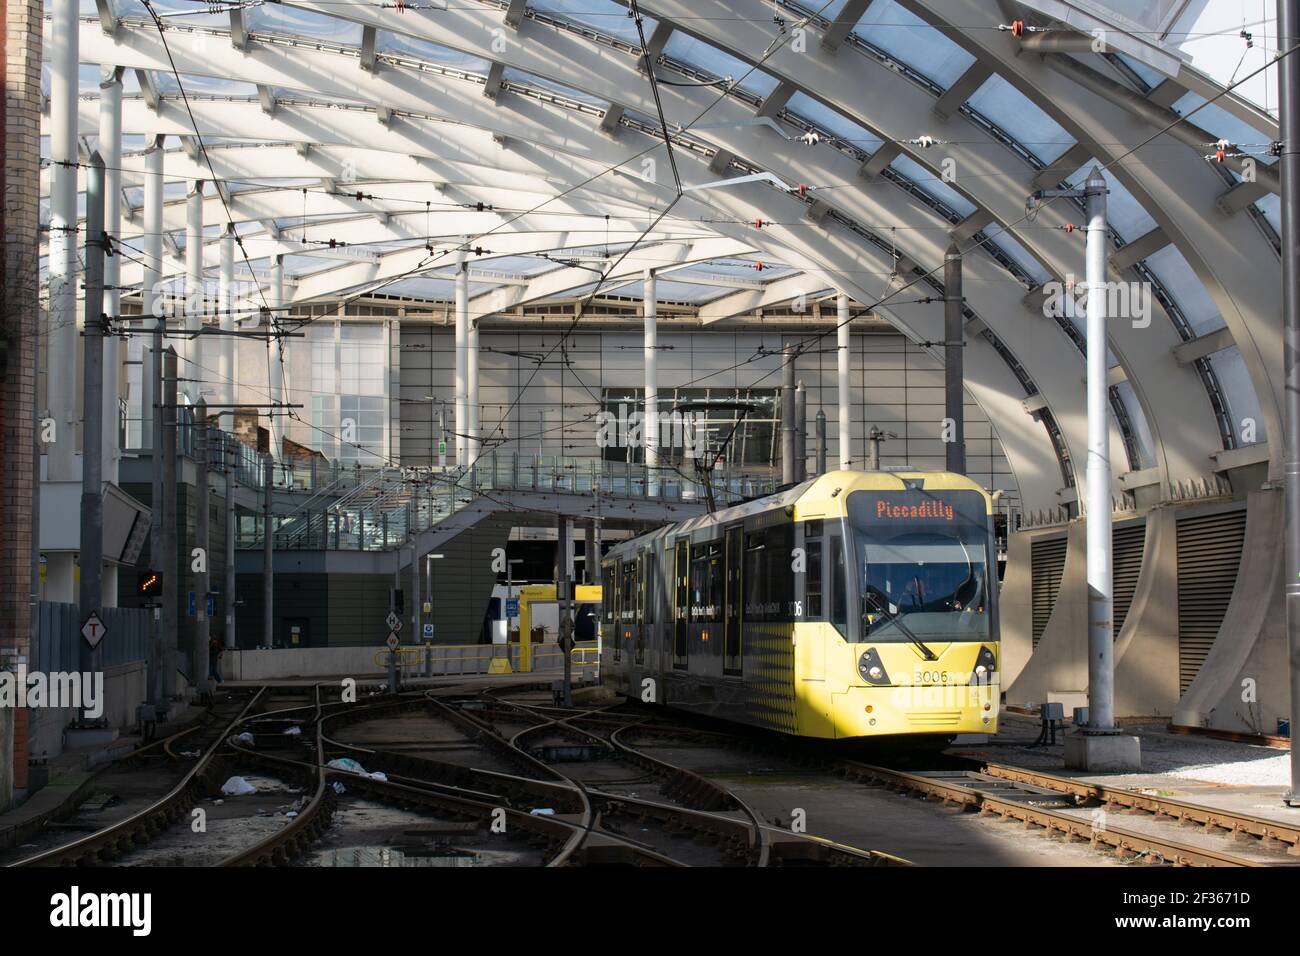 Stazione Victoria con tram giallo Metrolink sulla rotta per Piccadilly uscita dalla stazione Foto Stock